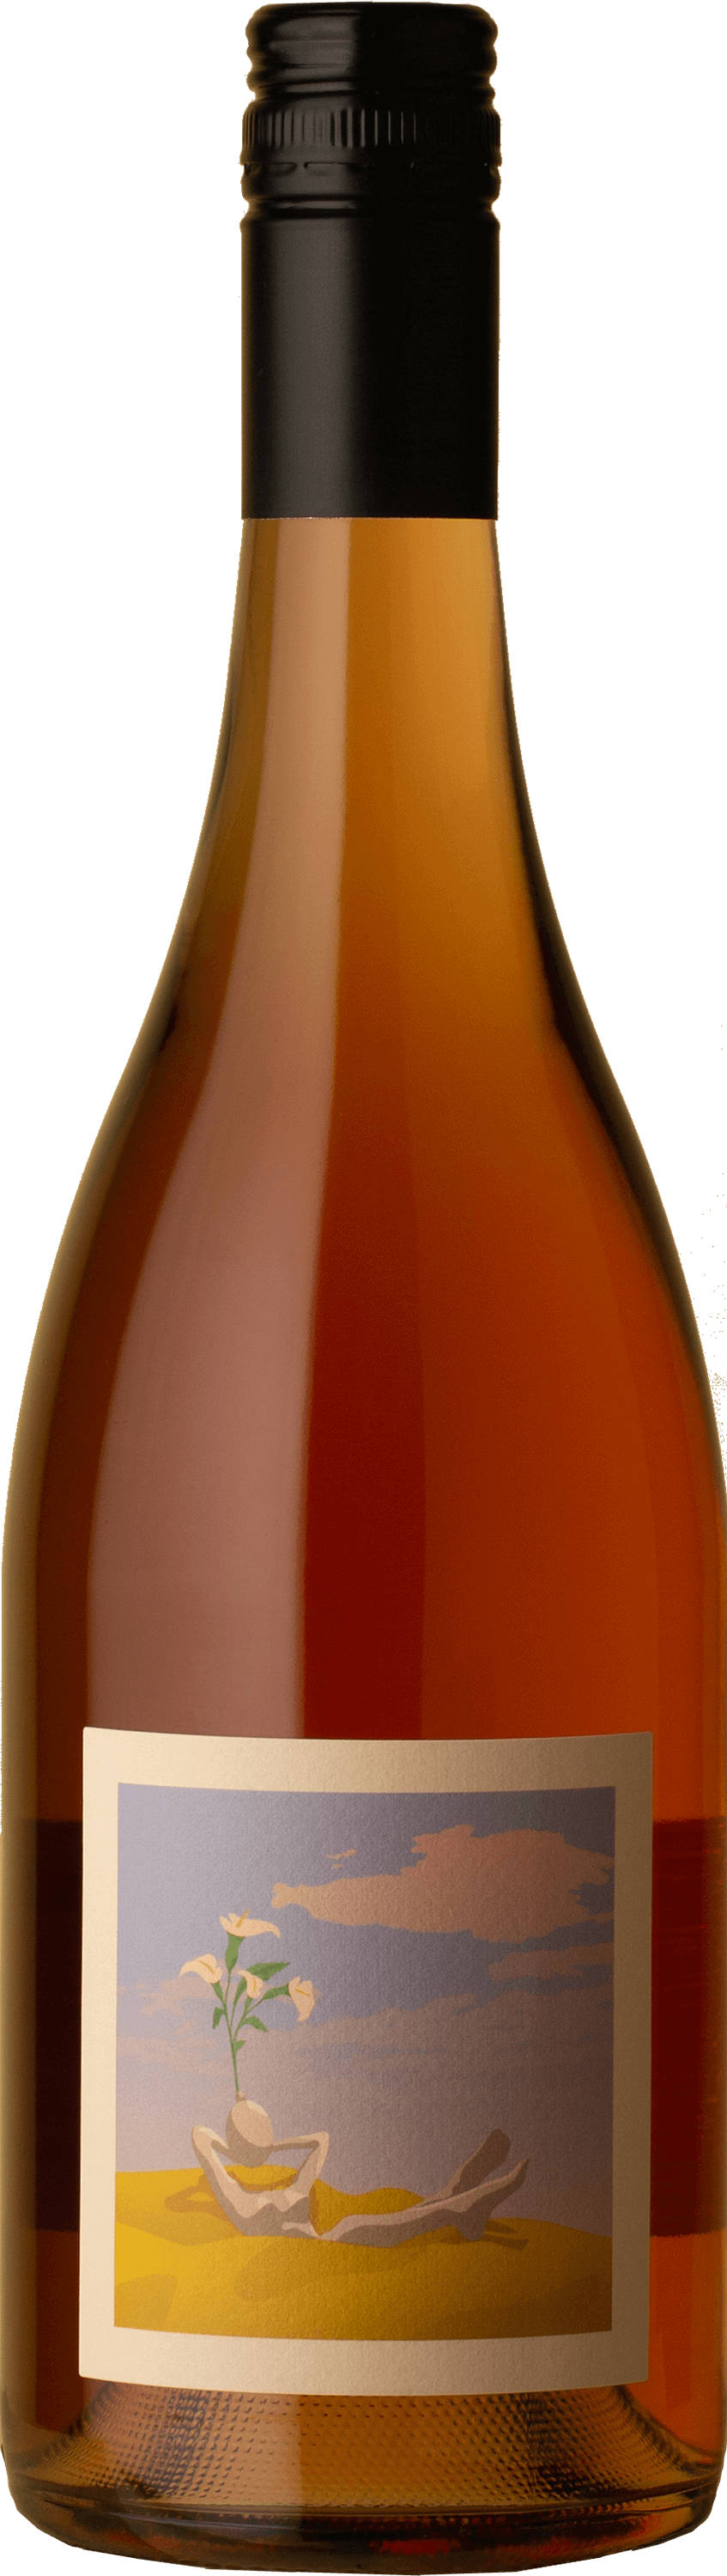 Onannon - The Level Pinot Gris 2021 Rosé